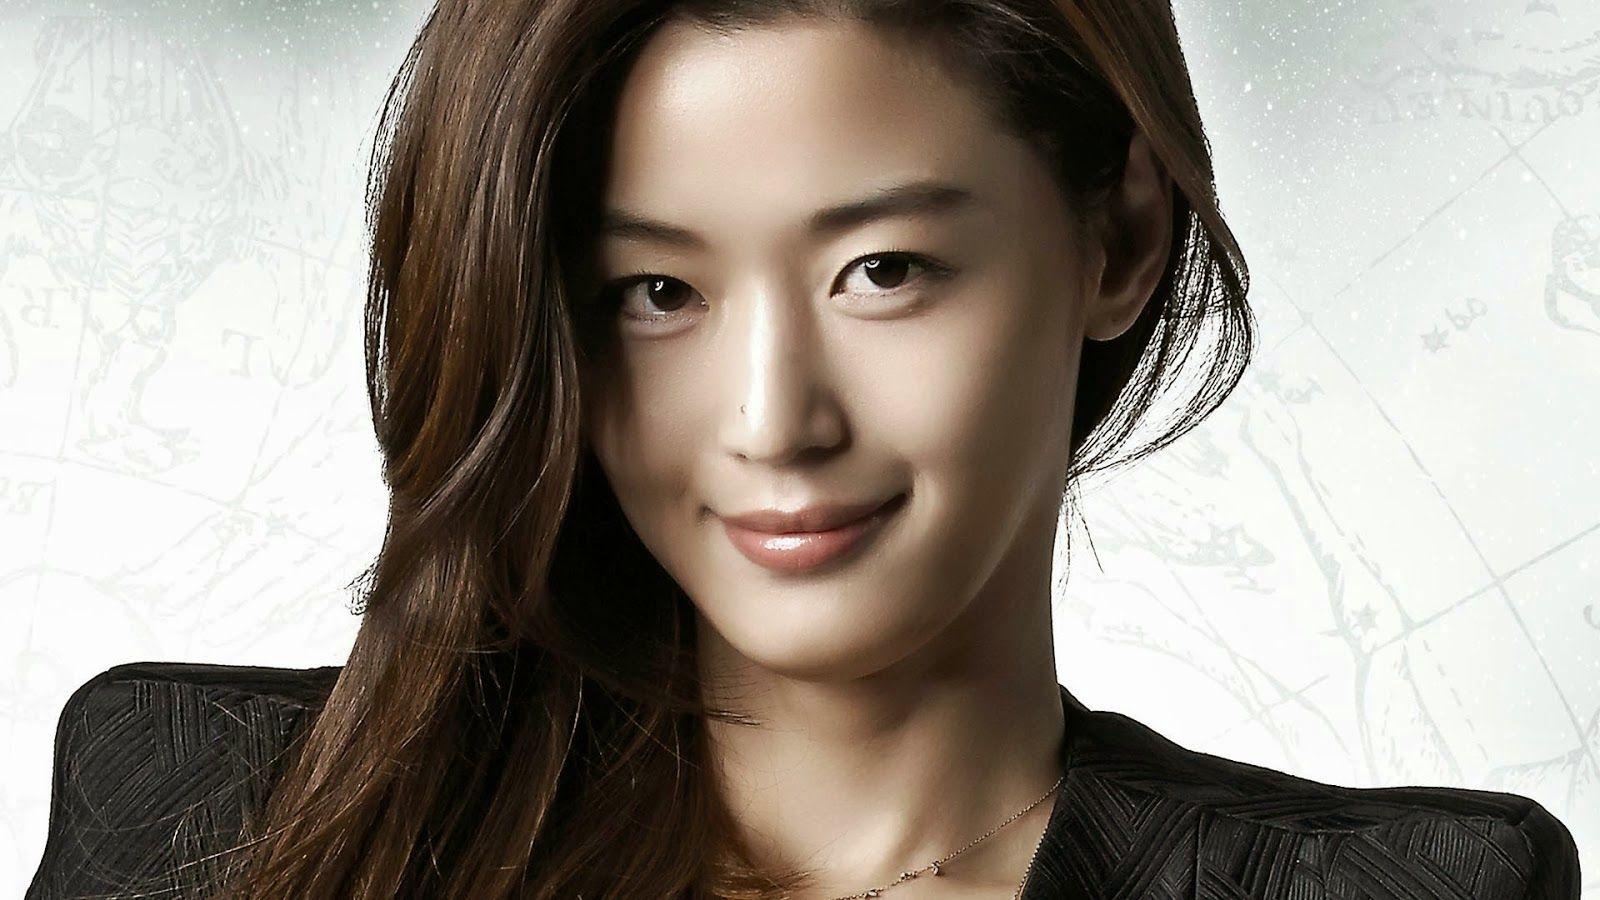 Korean Actress Wallpapers - Top Free Korean Actress Backgrounds